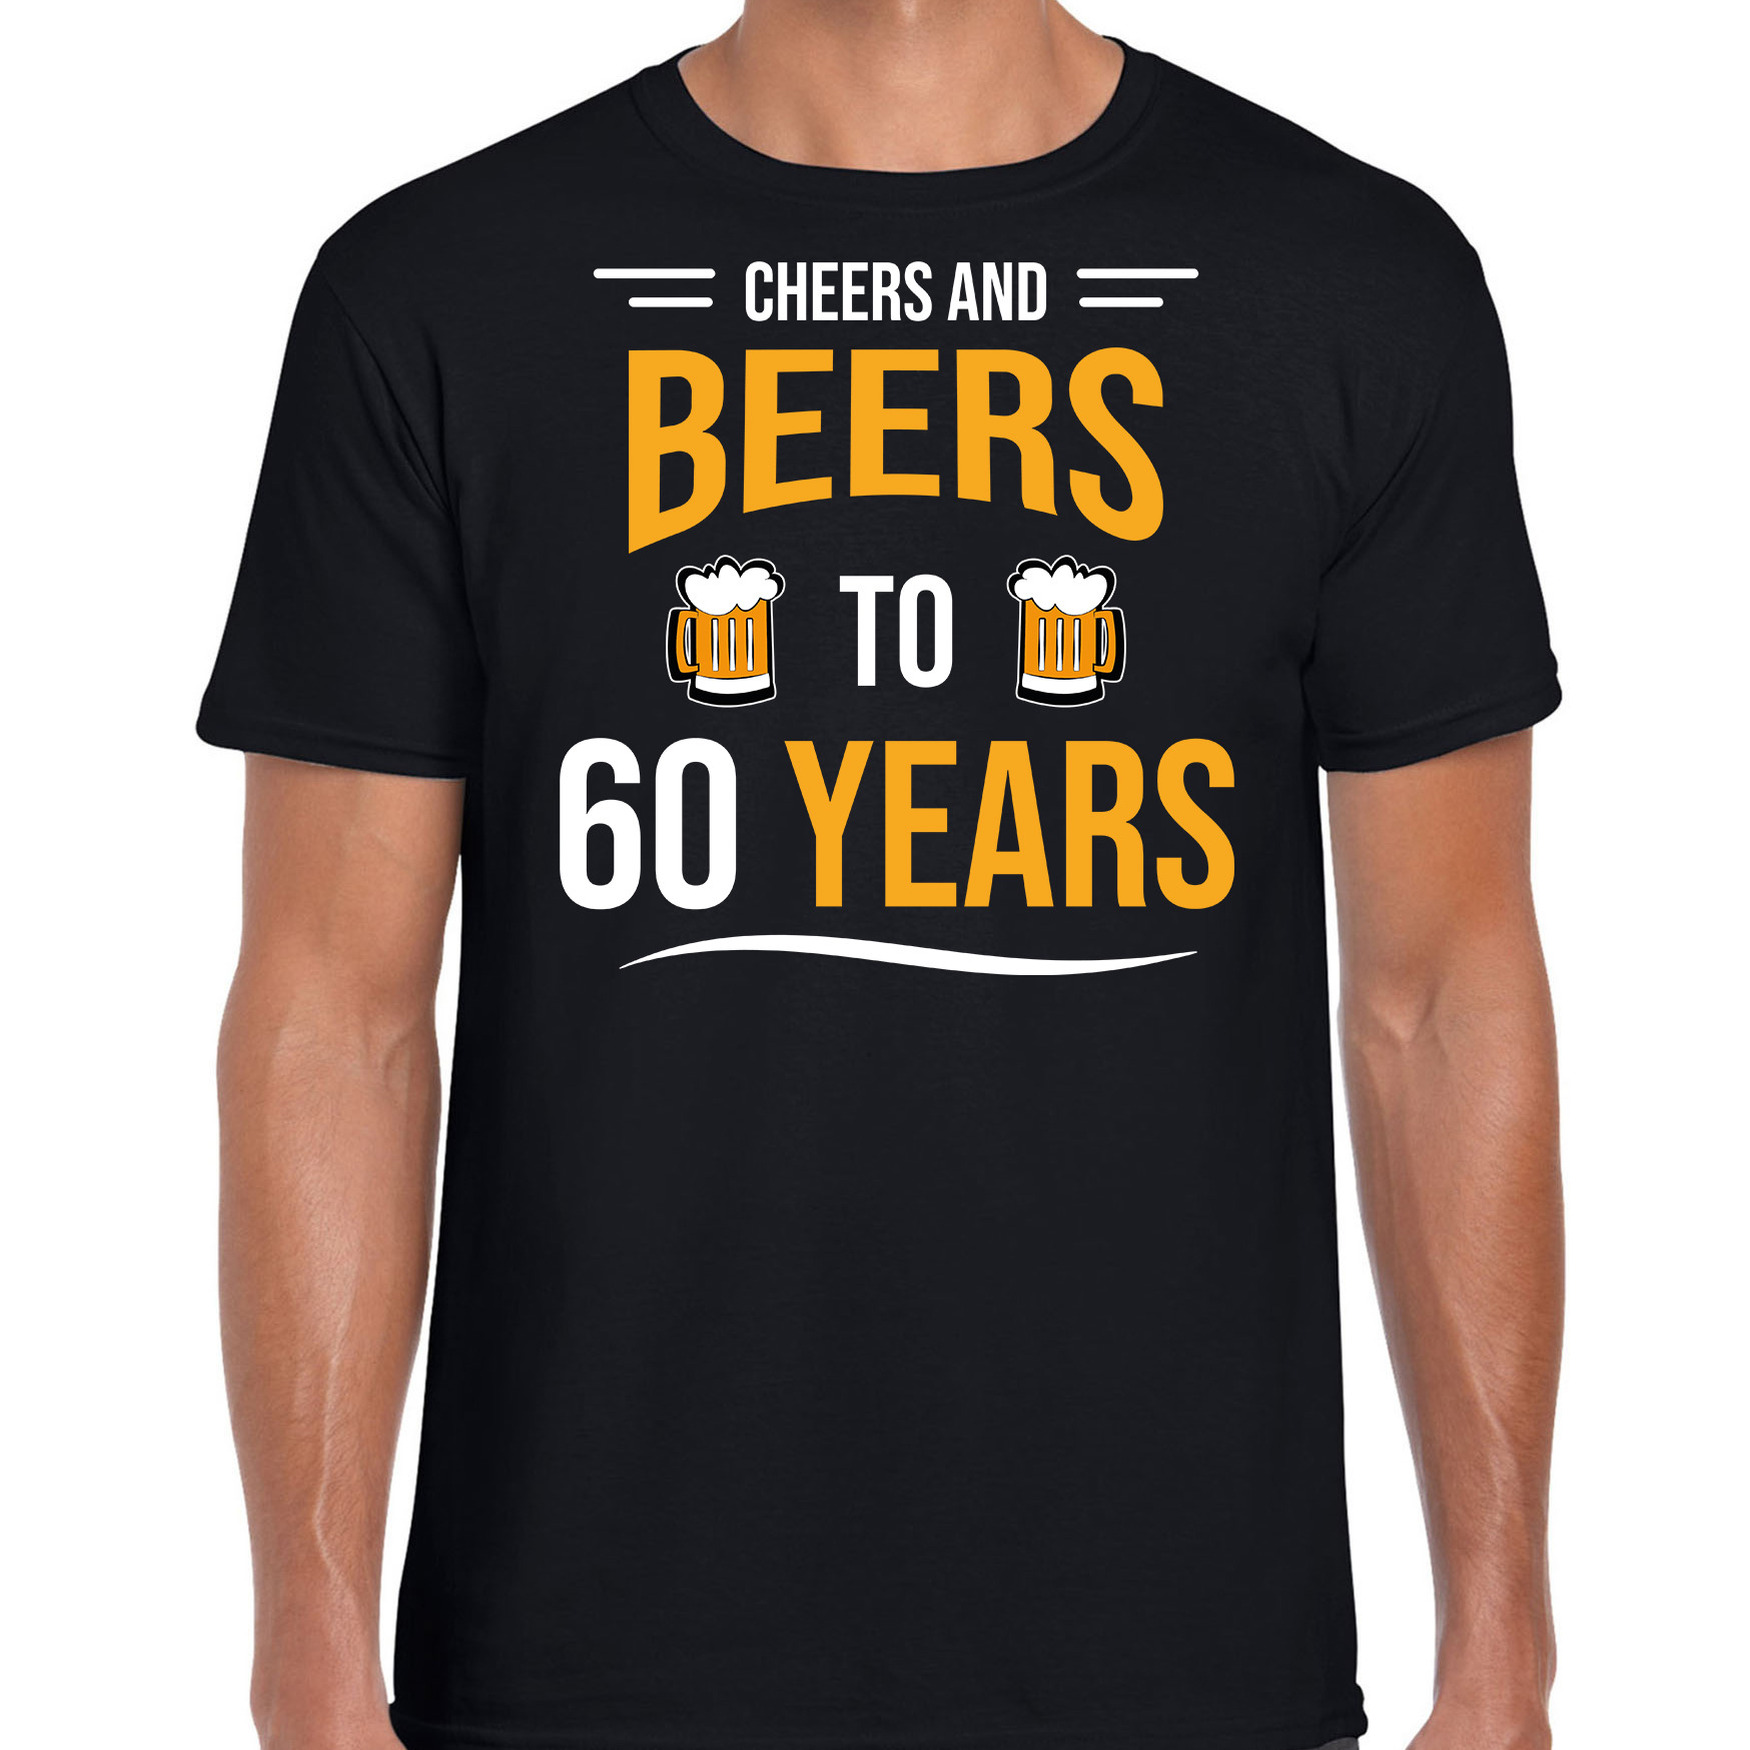 Cheers and beers 60 jaar verjaardag cadeau t-shirt zwart voor heren